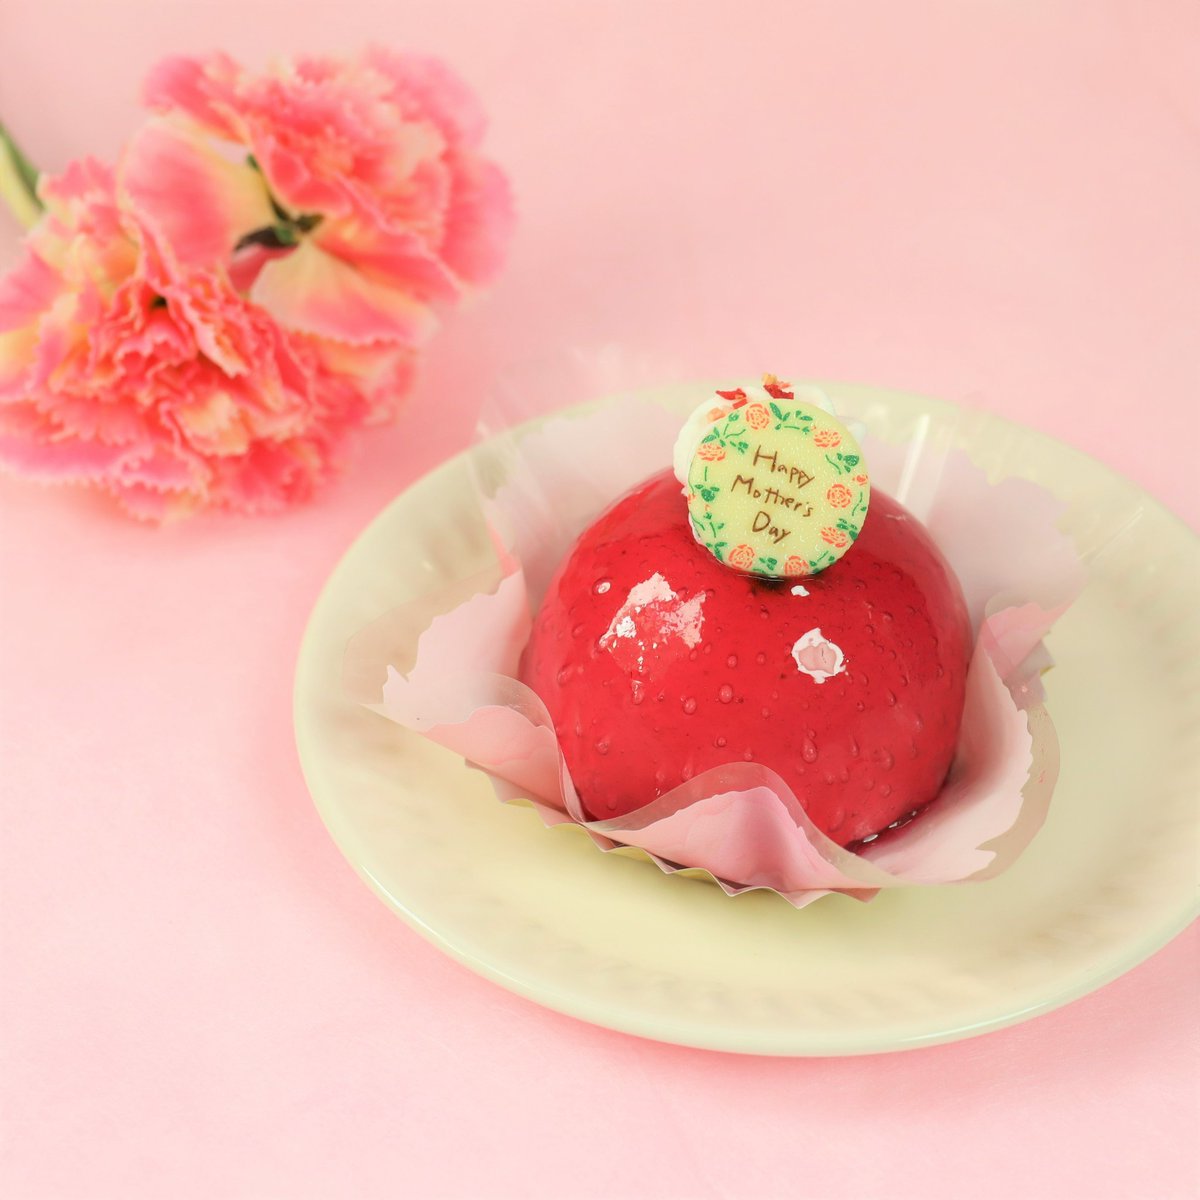 ／ 5/12（日）は母の日✨🌹 ＼ #不二家洋菓子店 では、 5/10（金）〜12（日）限定で お花をイメージしたかわいらしいケーキを ご用意しているよ💕 🍓「苺のフラワーケーキ」 🍓「苺のベリーケーキ」 不二家のスイーツといっしょに、 家族で楽しいひとときを😘 lnky.jp/ObJmS4d